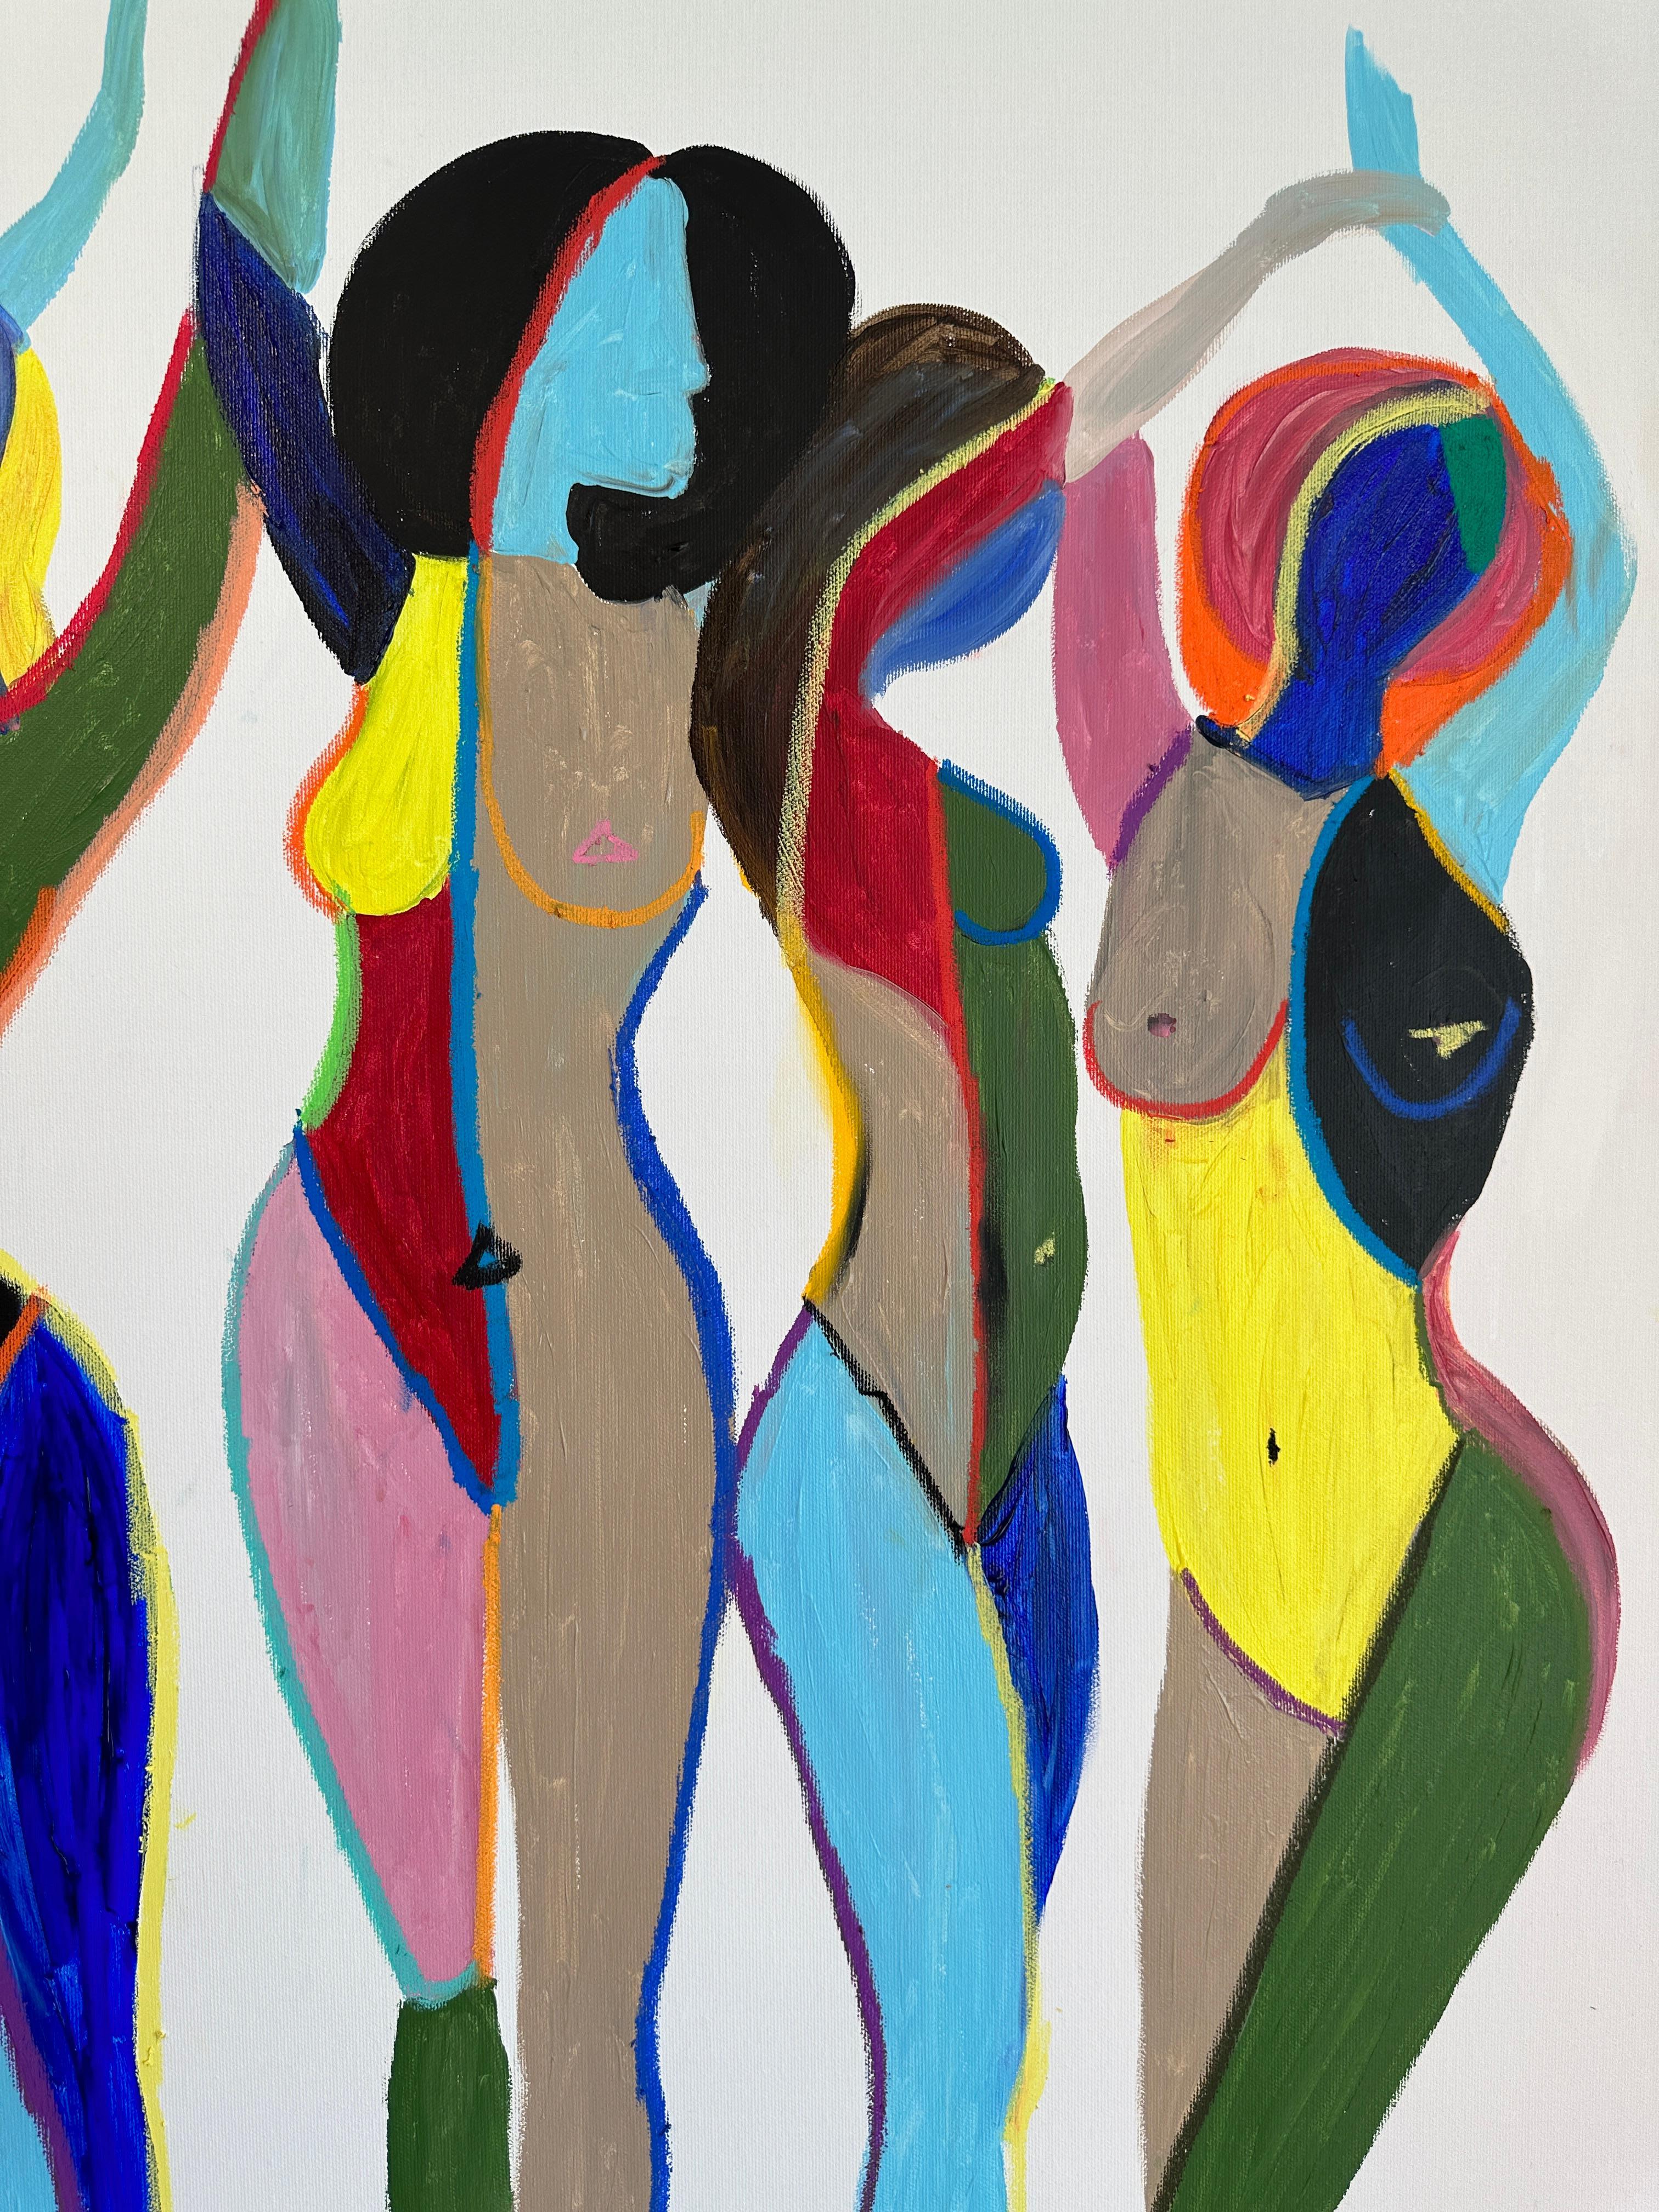 Katharina Hormel hat zwei verschiedene Werke geschaffen.

Auf der anderen Seite malt sie minimalistische Alltagsszenen mit Acrylfarben und Blattgold. Die Menschen, die sie porträtiert, sind unterwegs und gehen ihrem täglichen Leben nach, gehen im